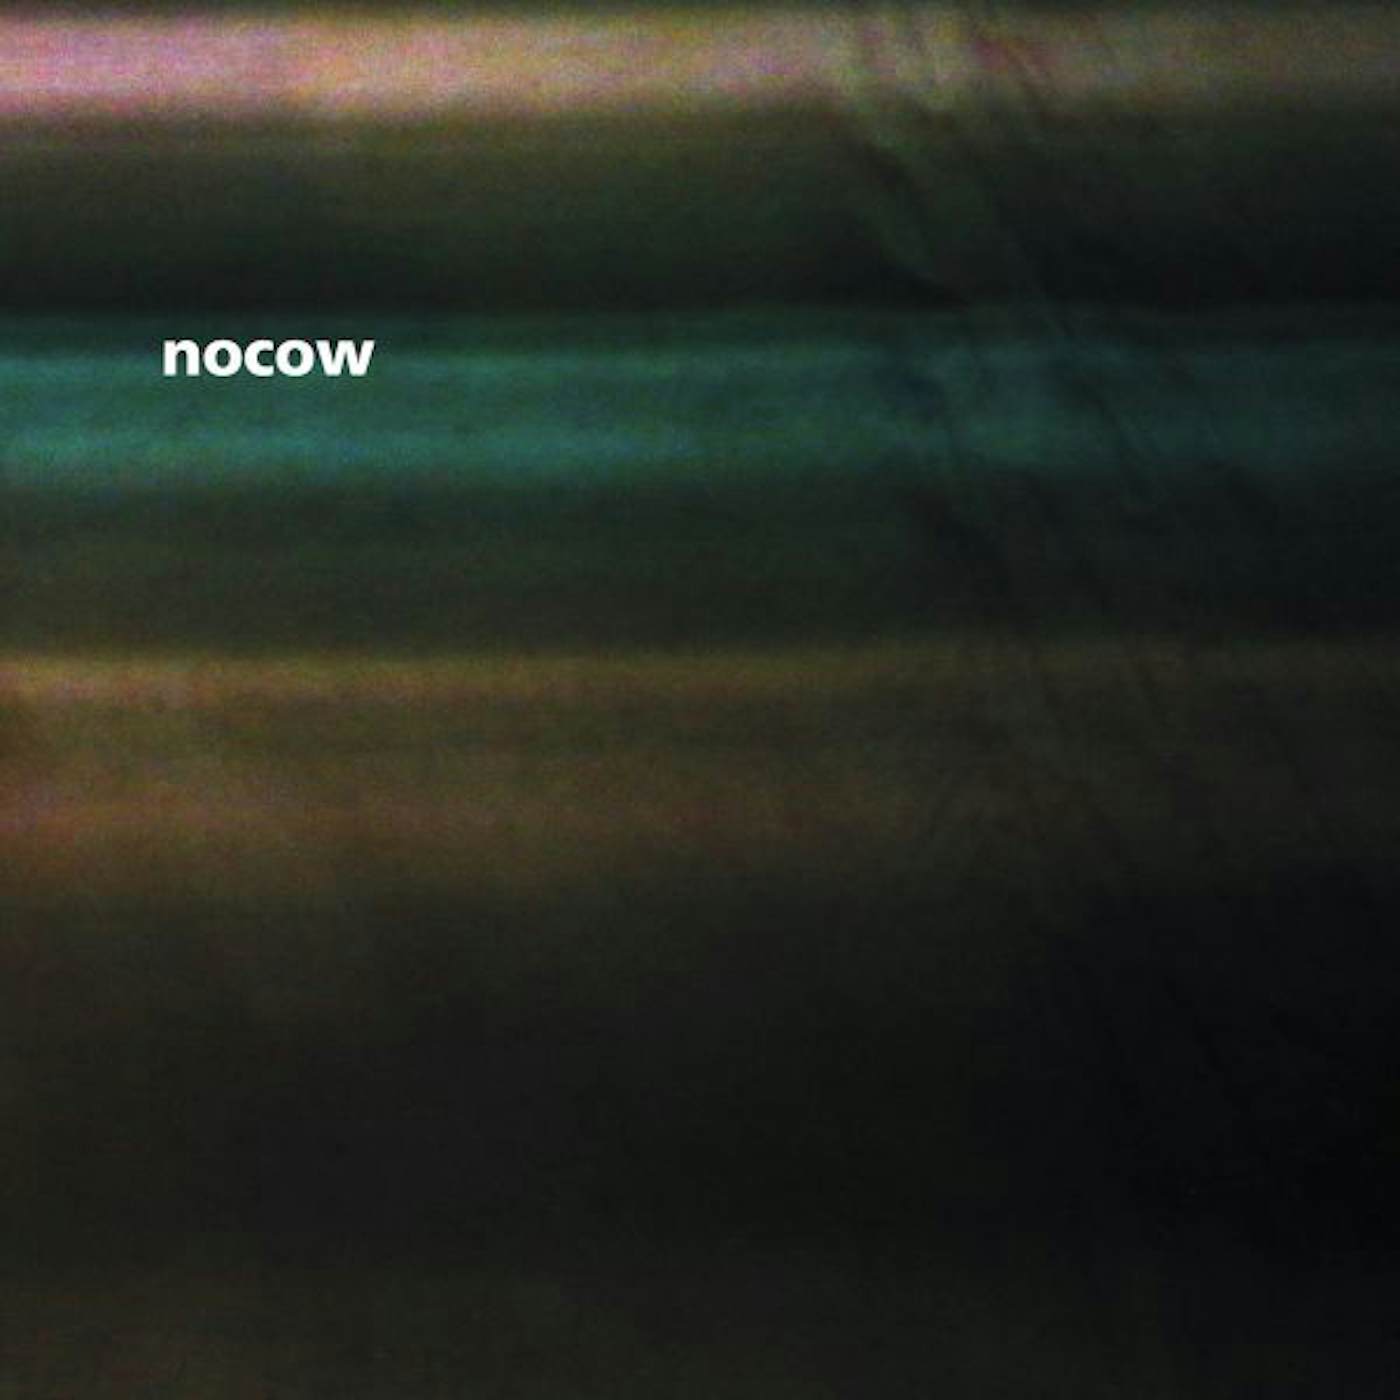 Nocow Zemlya Vinyl Record